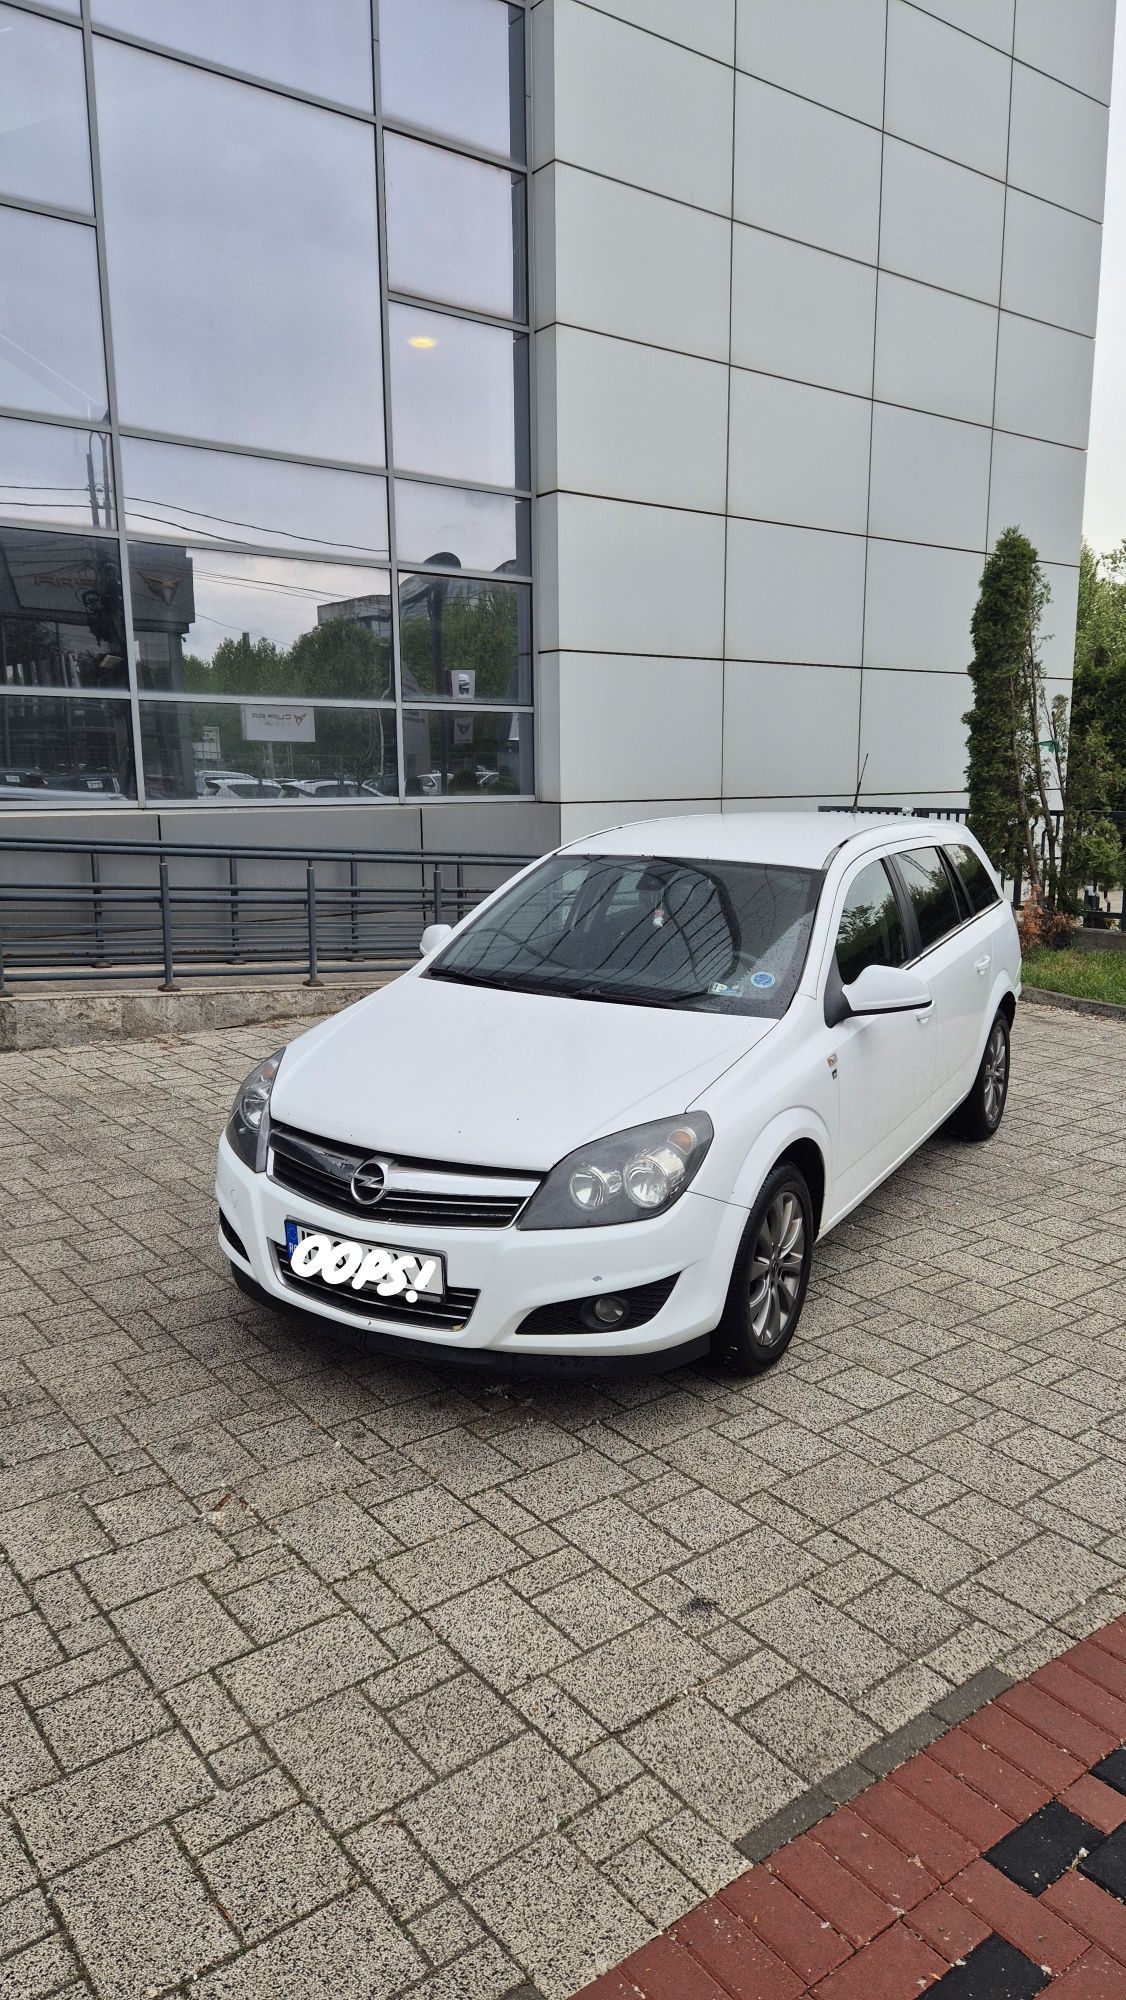 De Vânzare Opel Astra H 2010 1.7 Diesel